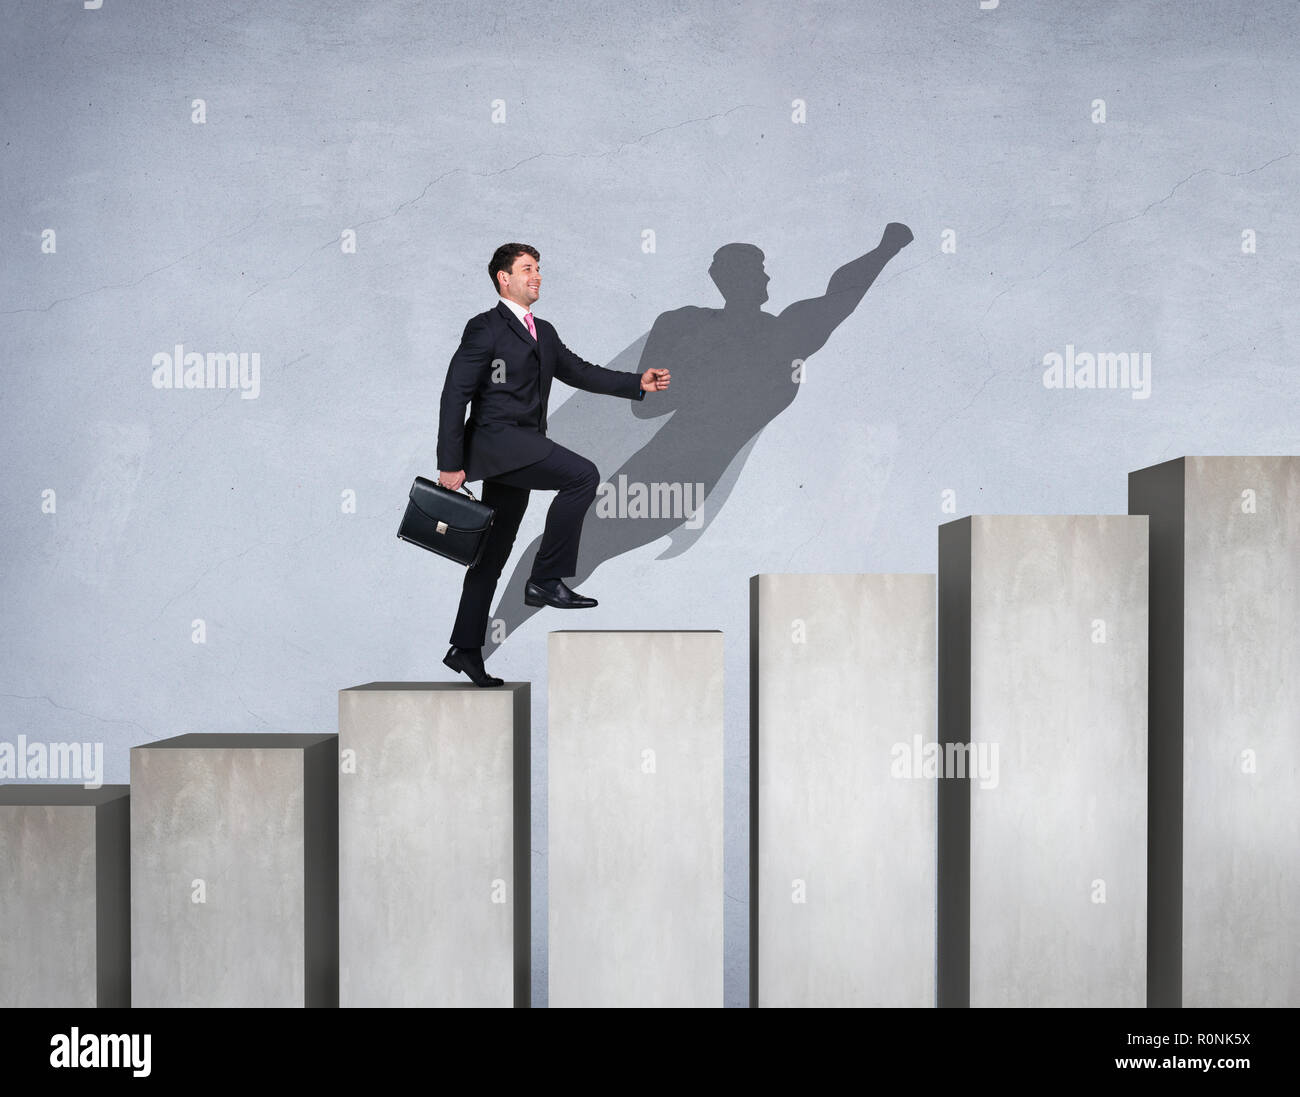 Empresario subir en el escalafón de la carrera con los superhéroes sombra en la pared. Foto de stock